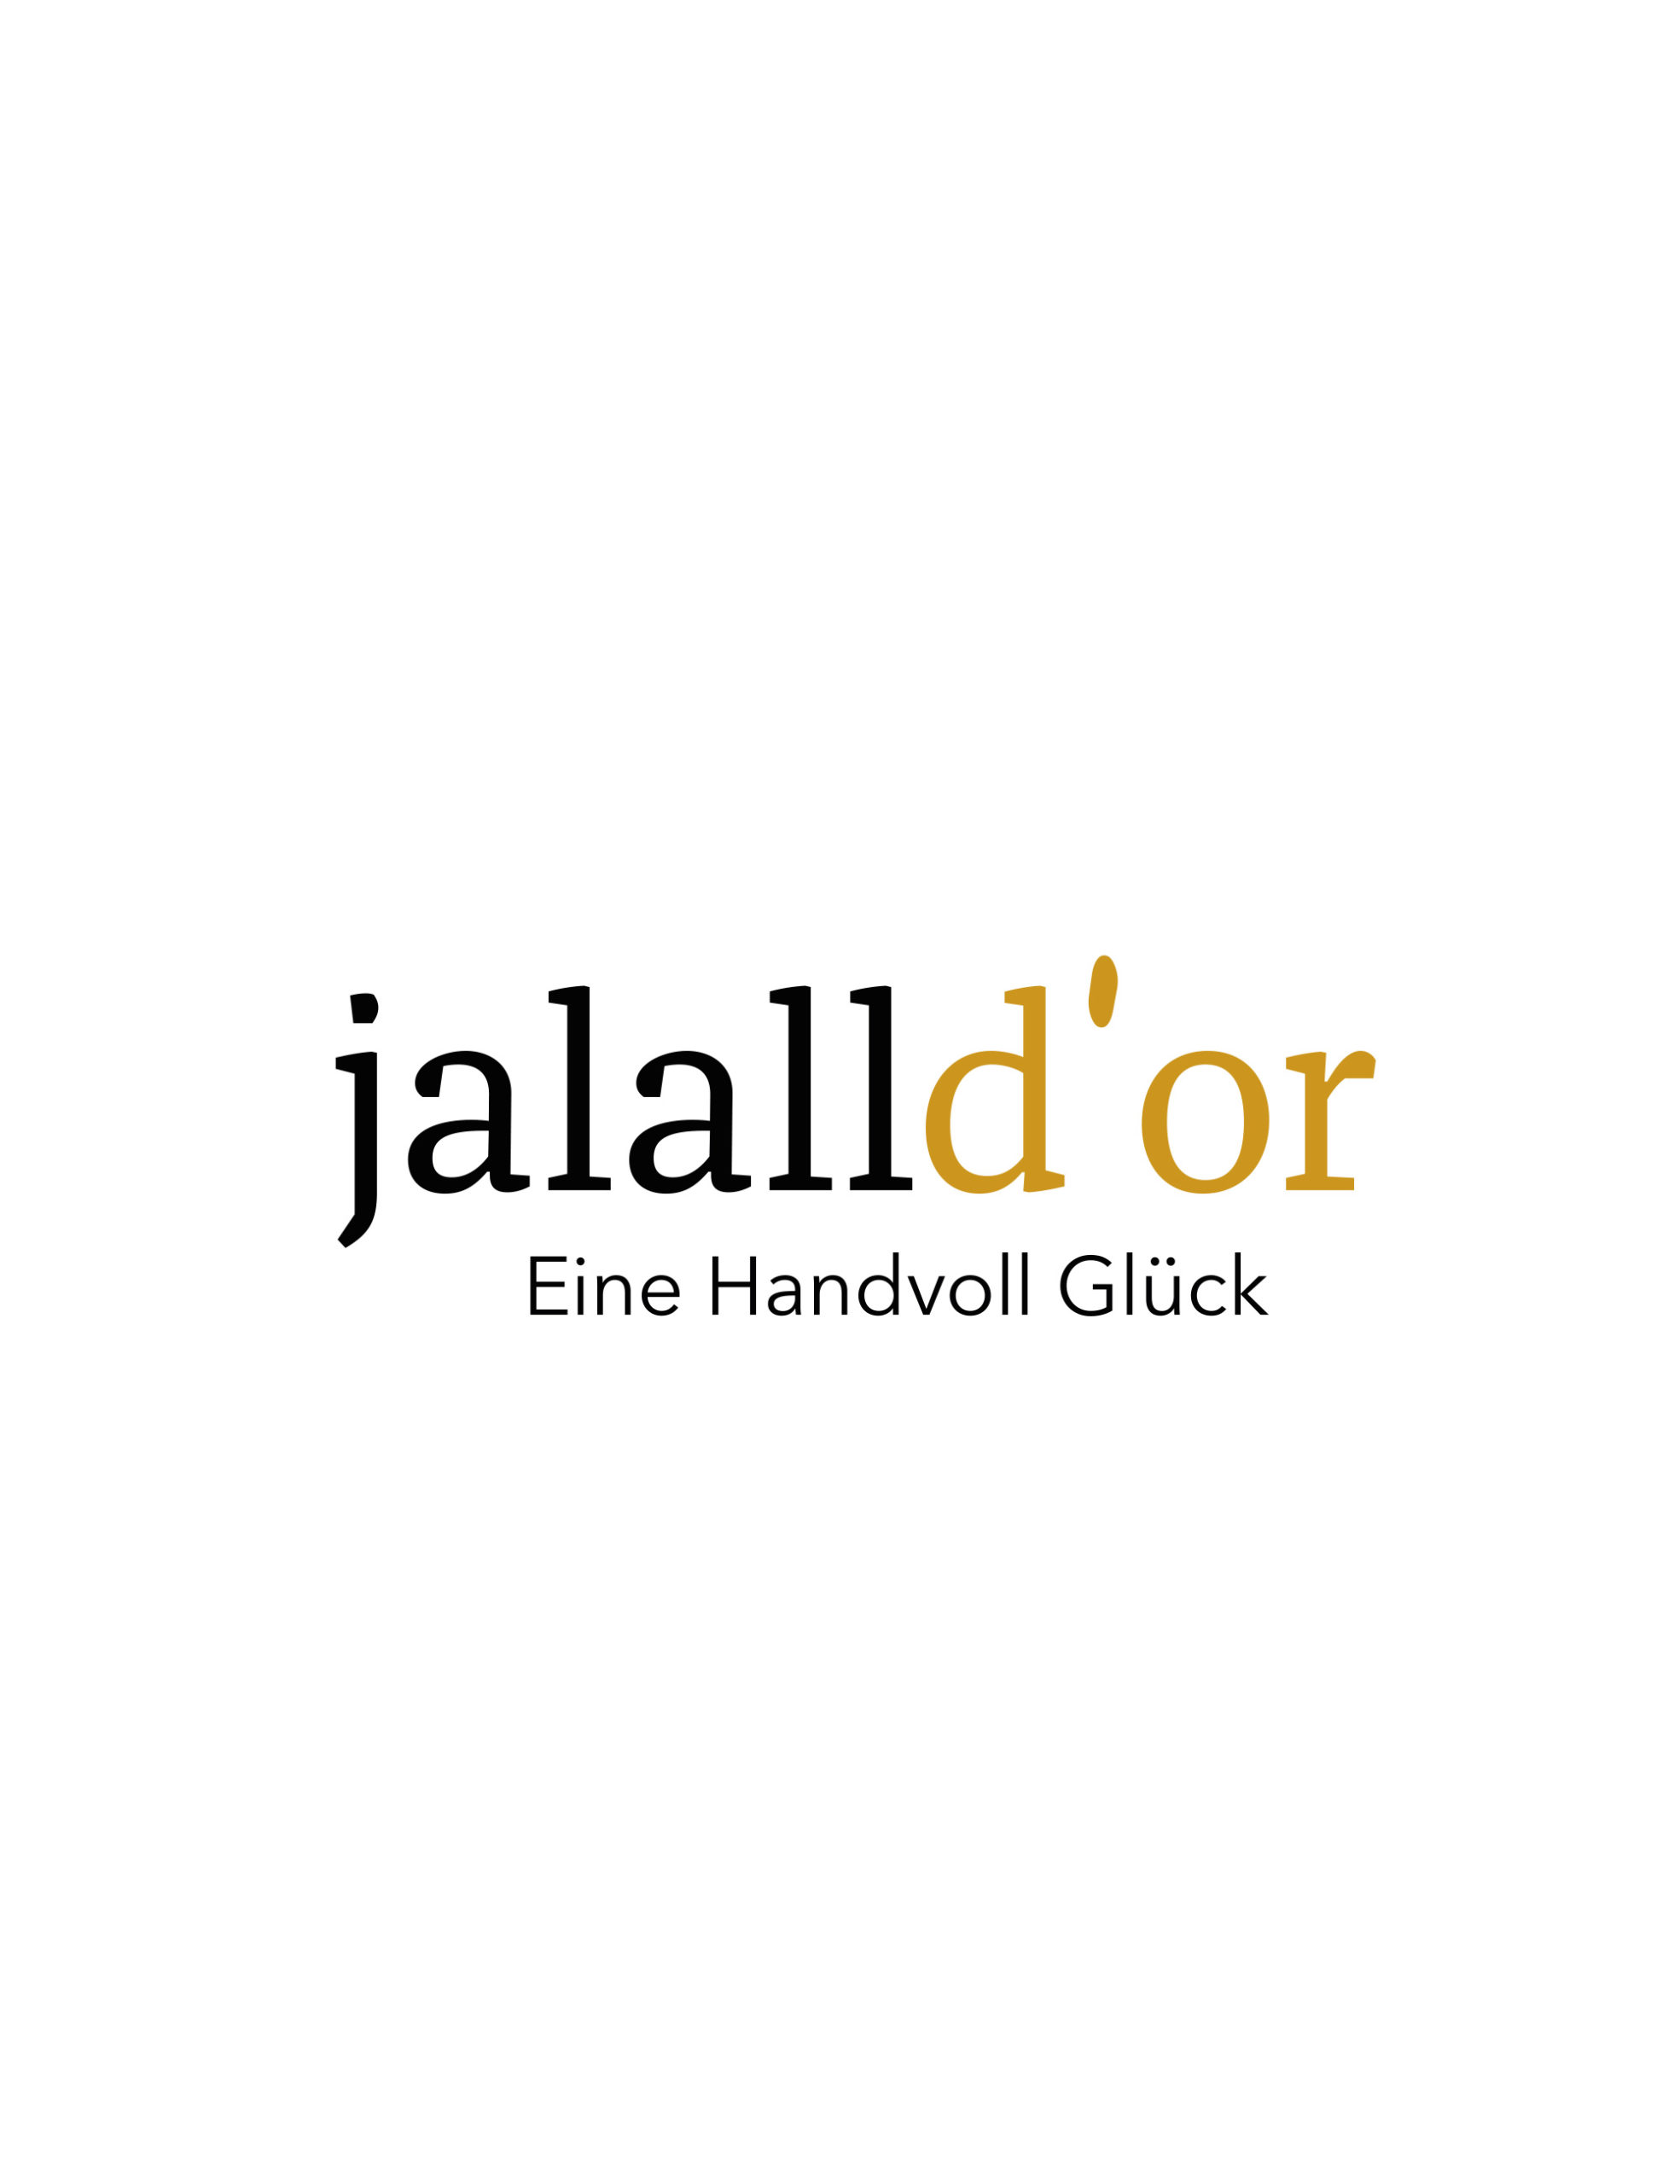 Jallal D'or Logogestaltung Dreieck Wortmarke